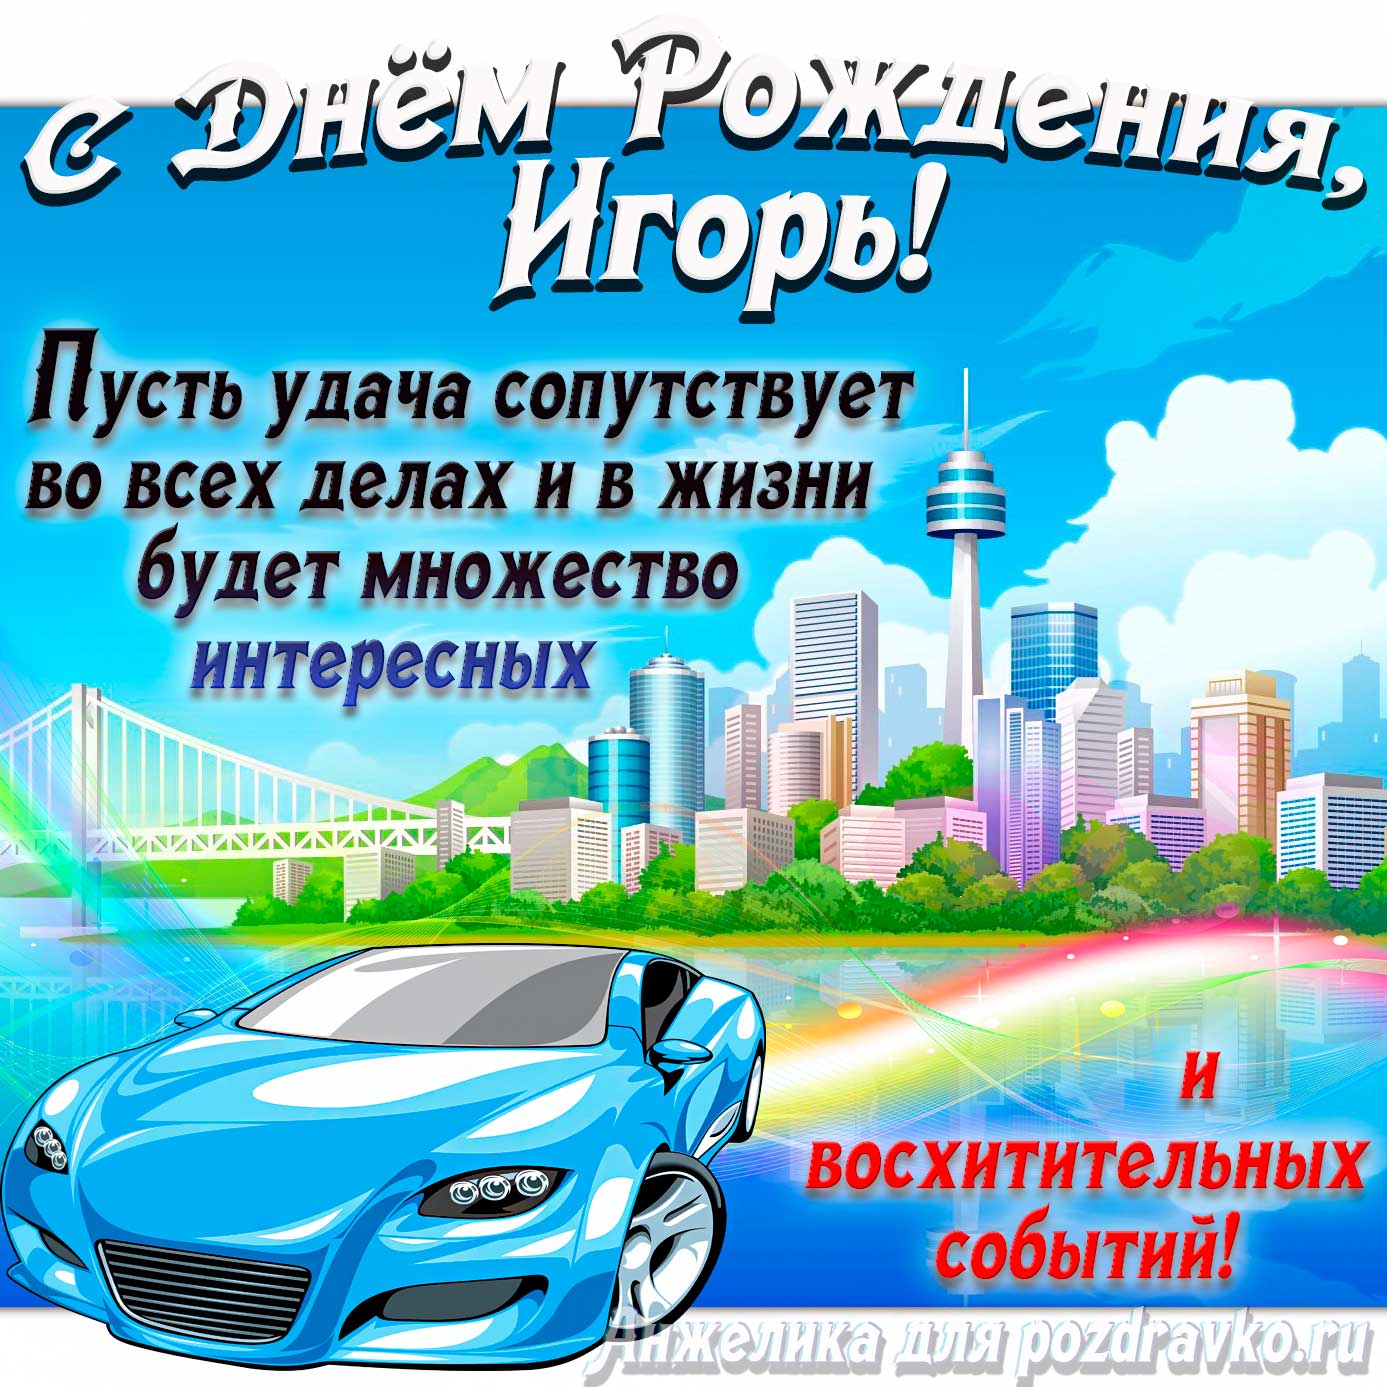 Открытка - с Днём Рождения Игорь с голубой машиной и пожеланием. Скачать бесплатно или отправить картинку.